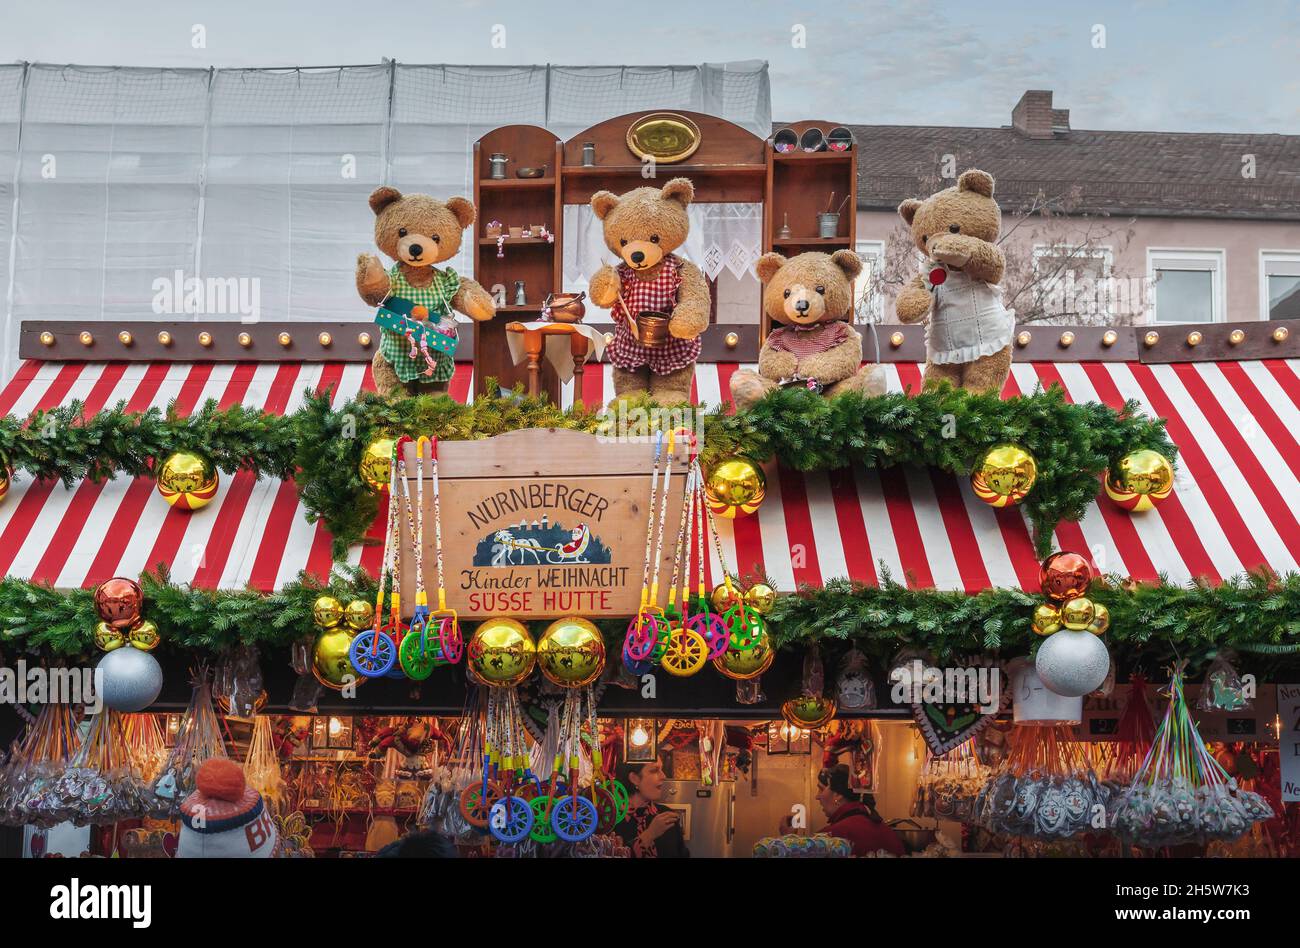 Weihnachtsmarkt-Dekoration am Christkindlesmarkt - Nürnberg, Bayern, Deutschland Stockfoto